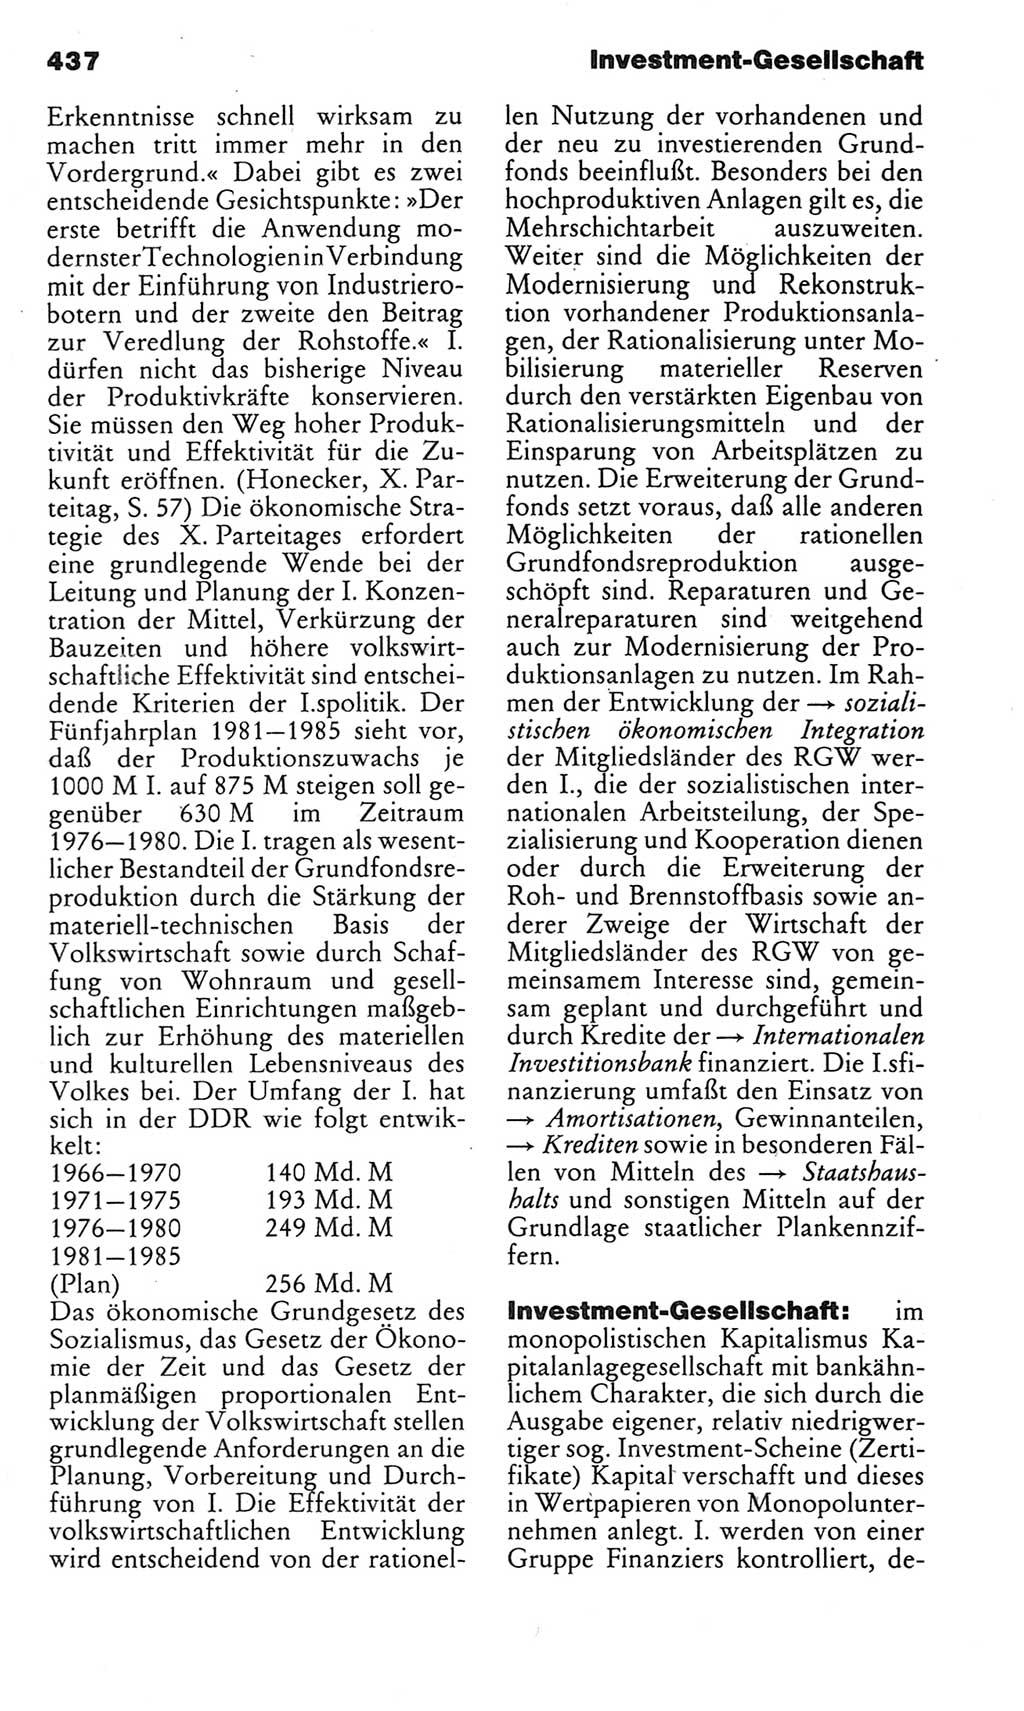 Kleines politisches Wörterbuch [Deutsche Demokratische Republik (DDR)] 1983, Seite 437 (Kl. pol. Wb. DDR 1983, S. 437)